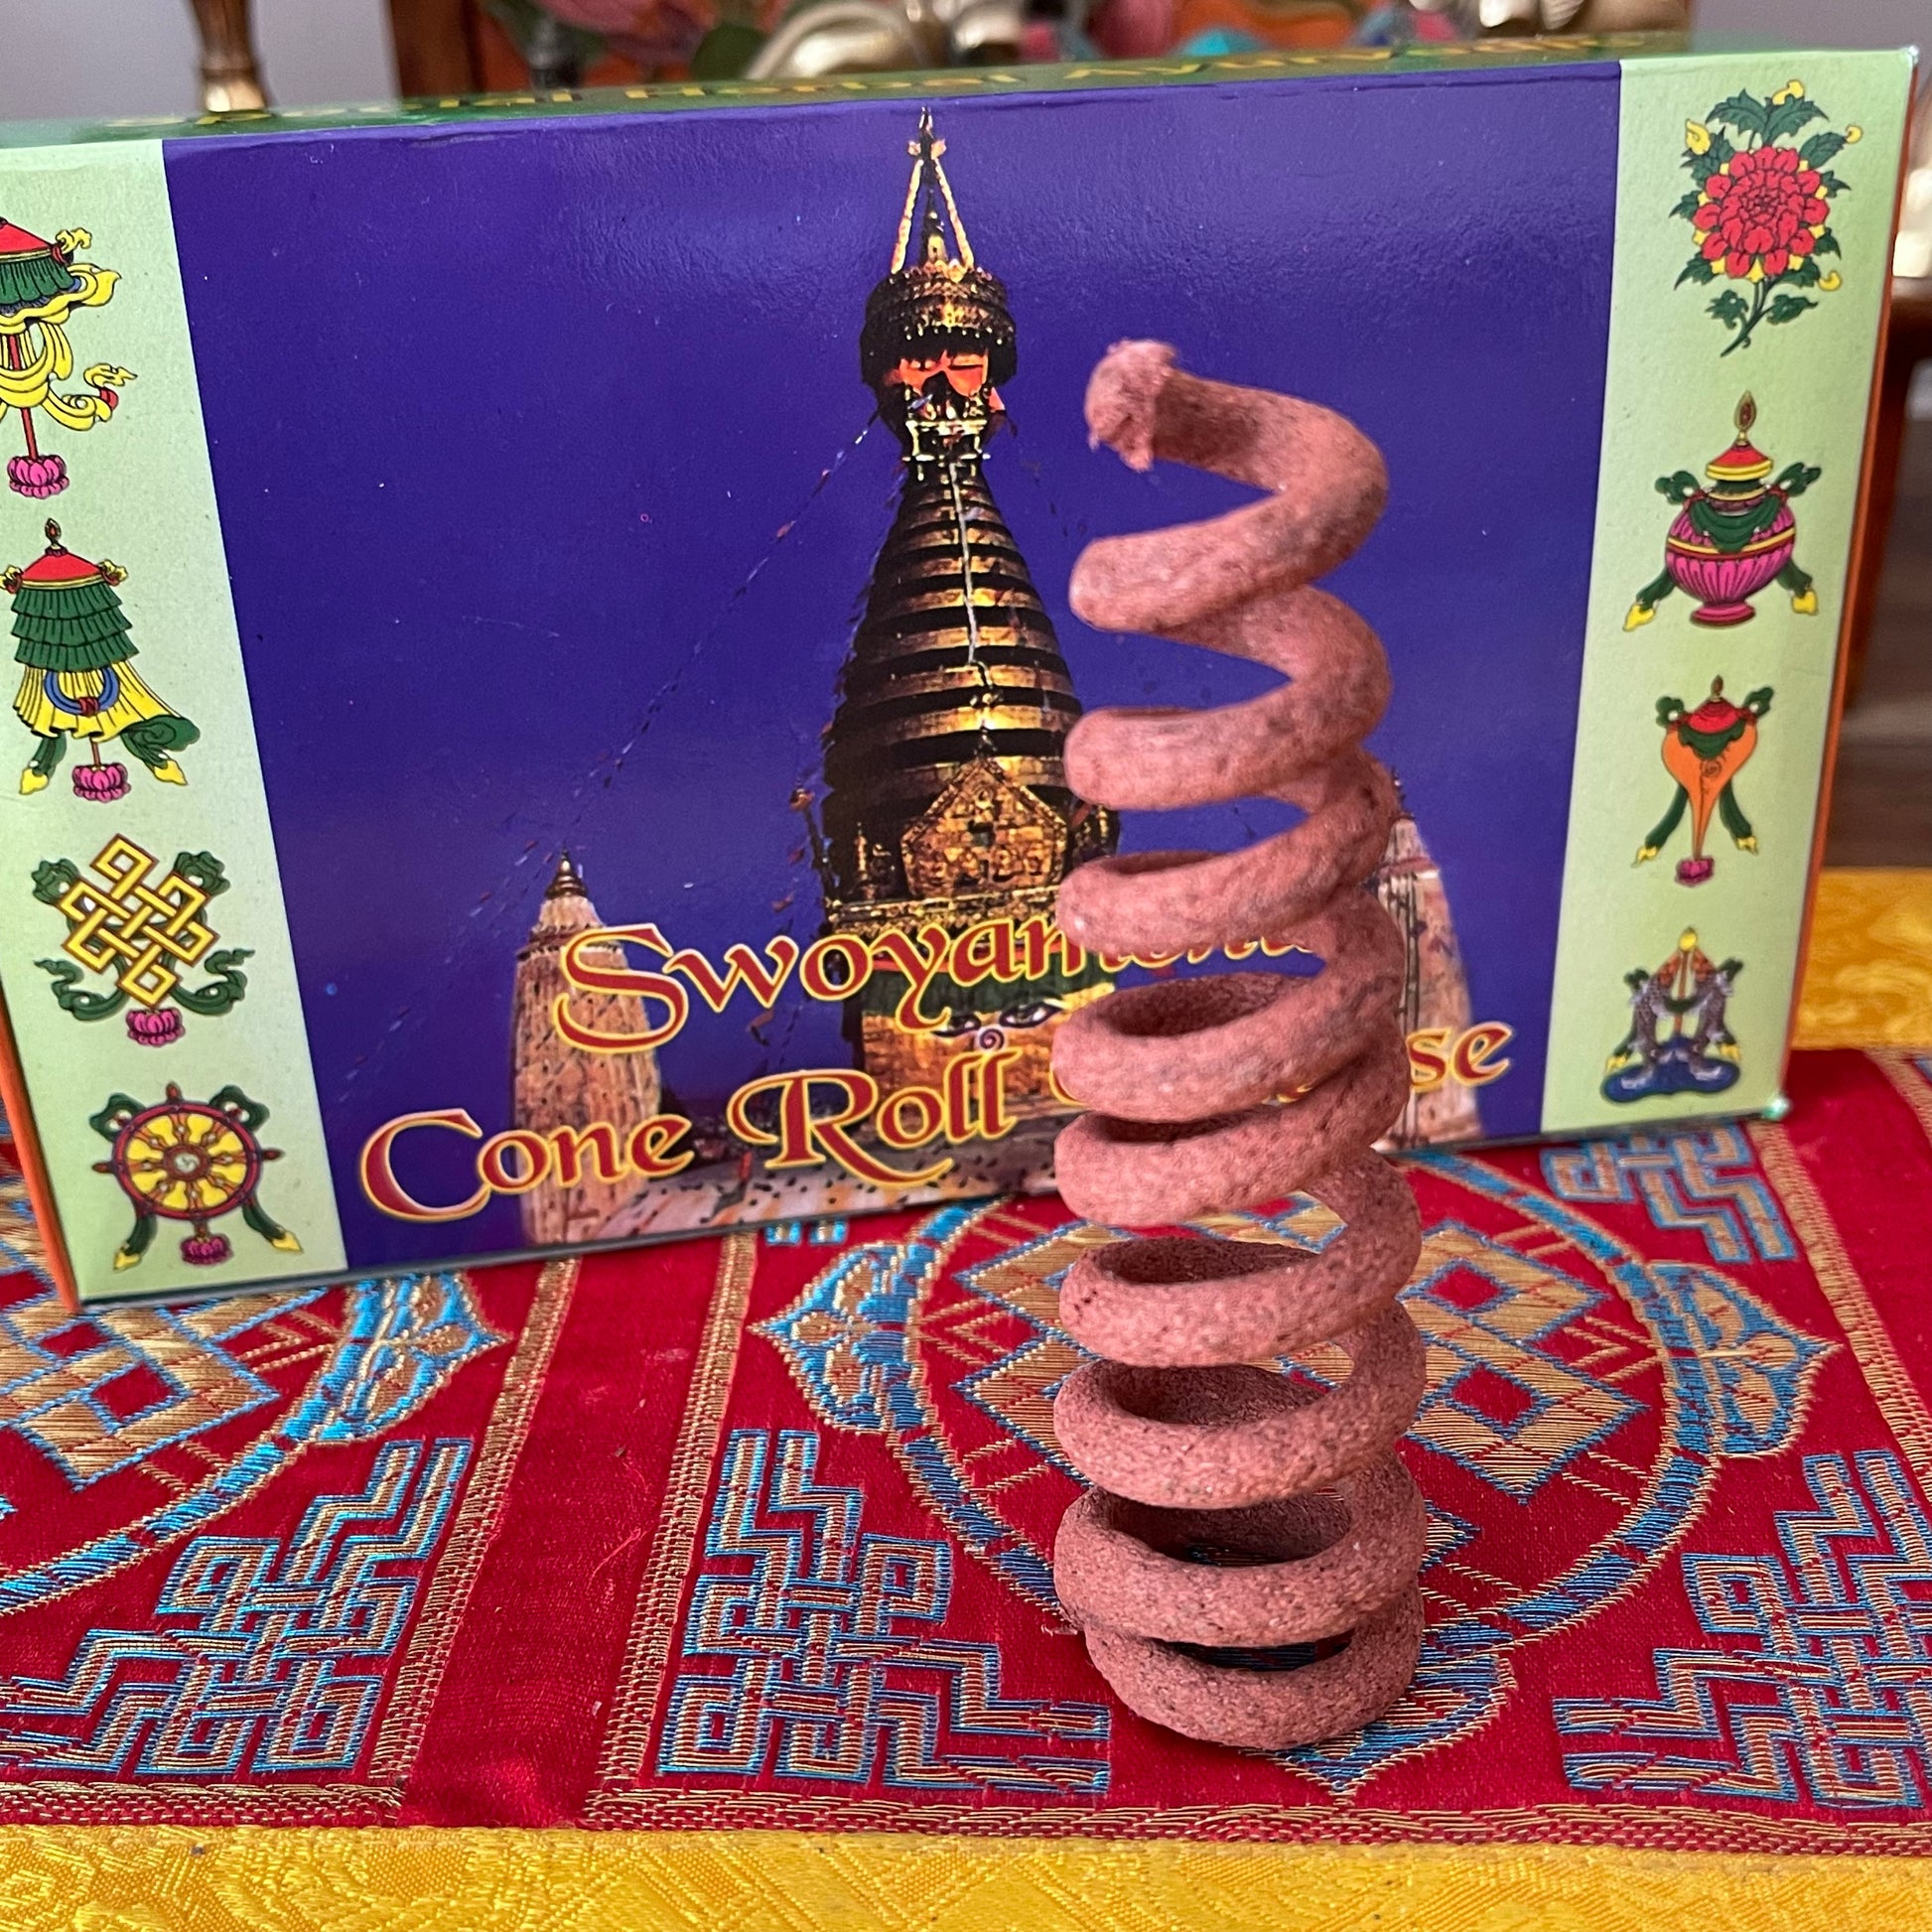 Swoyambhu Cone Incense Gift Pack | Chandra Devi Incense 